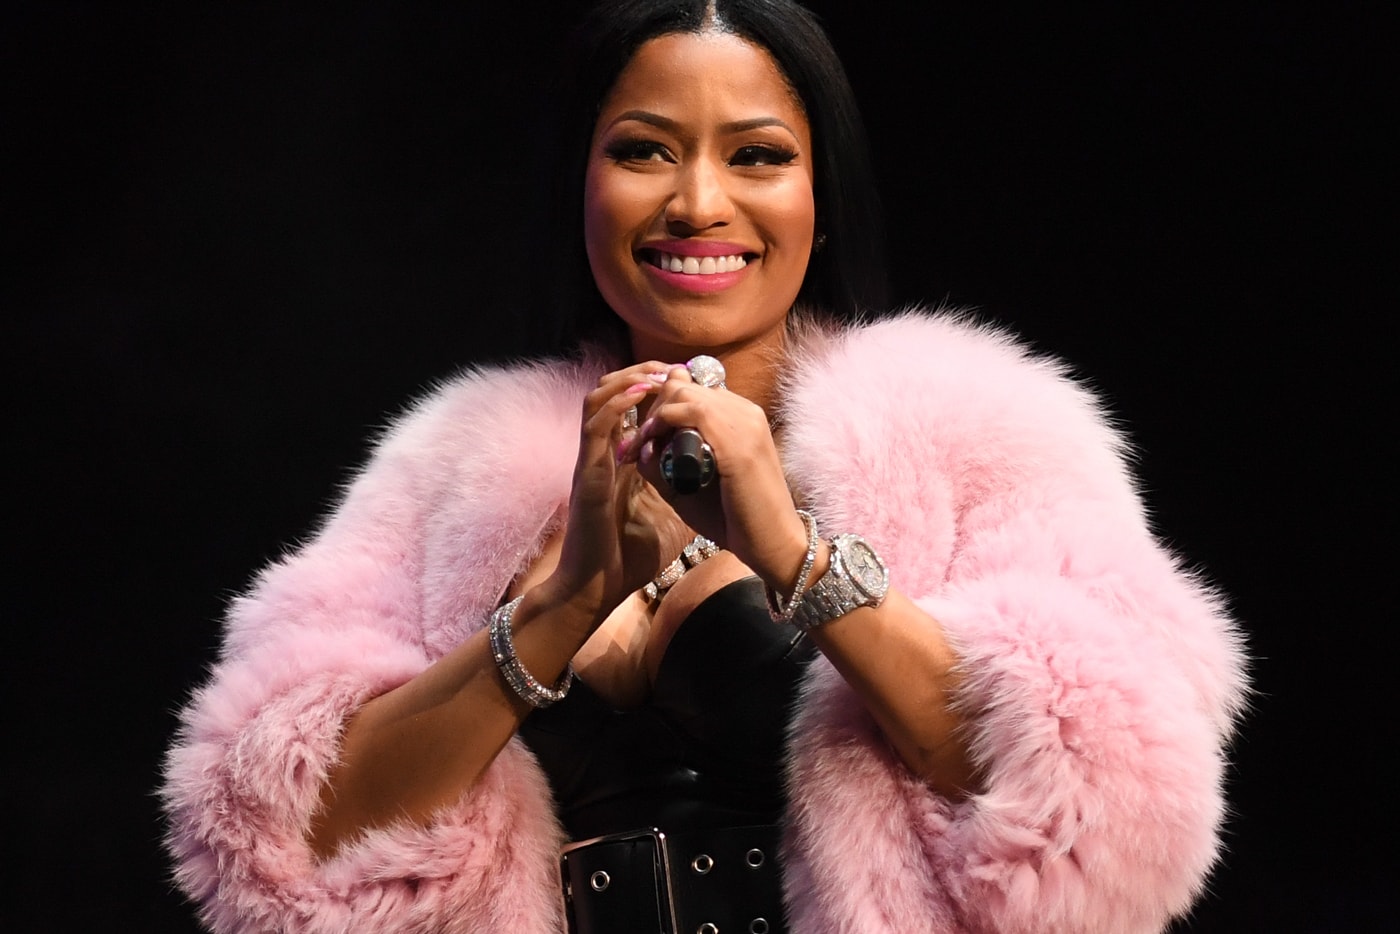 Nicki Minaj 2 Chainz Realize NBA Awards Performance